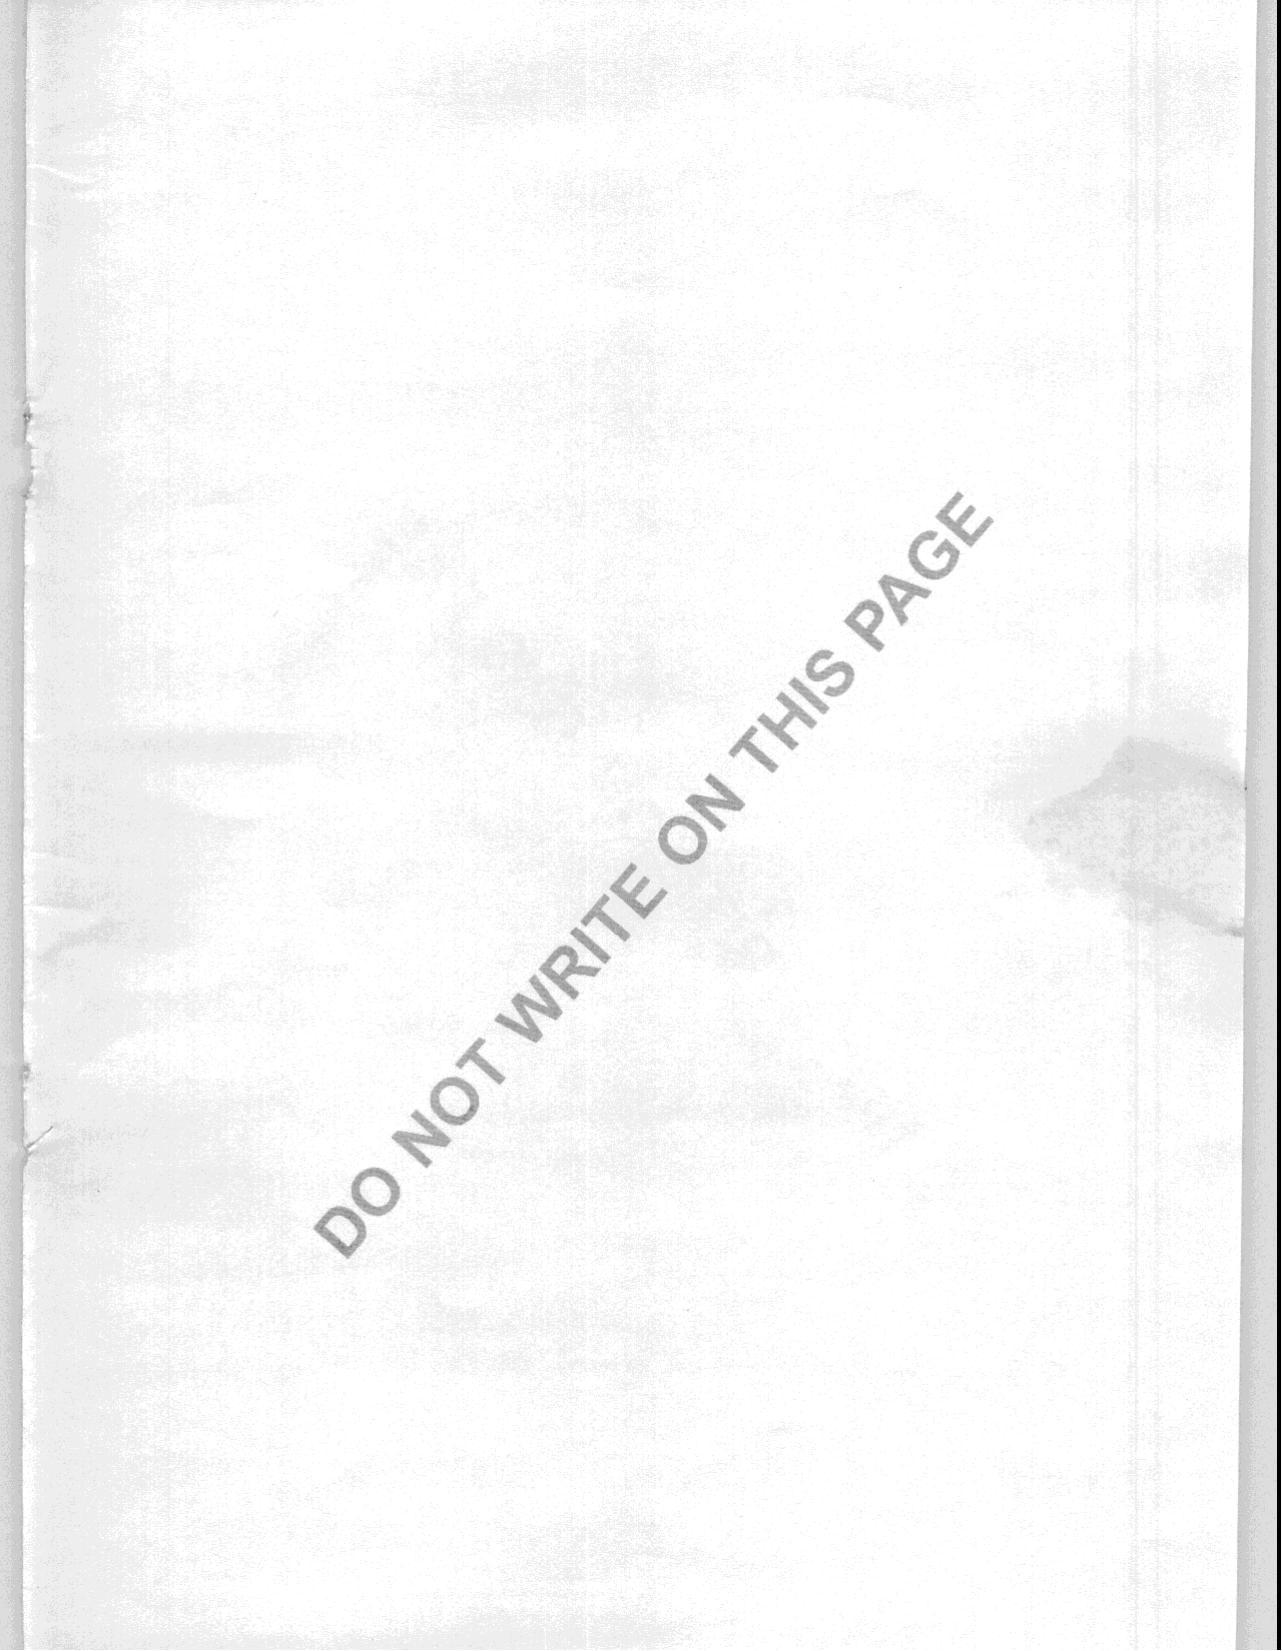 JAM 2008: BT Question Paper - Page 23